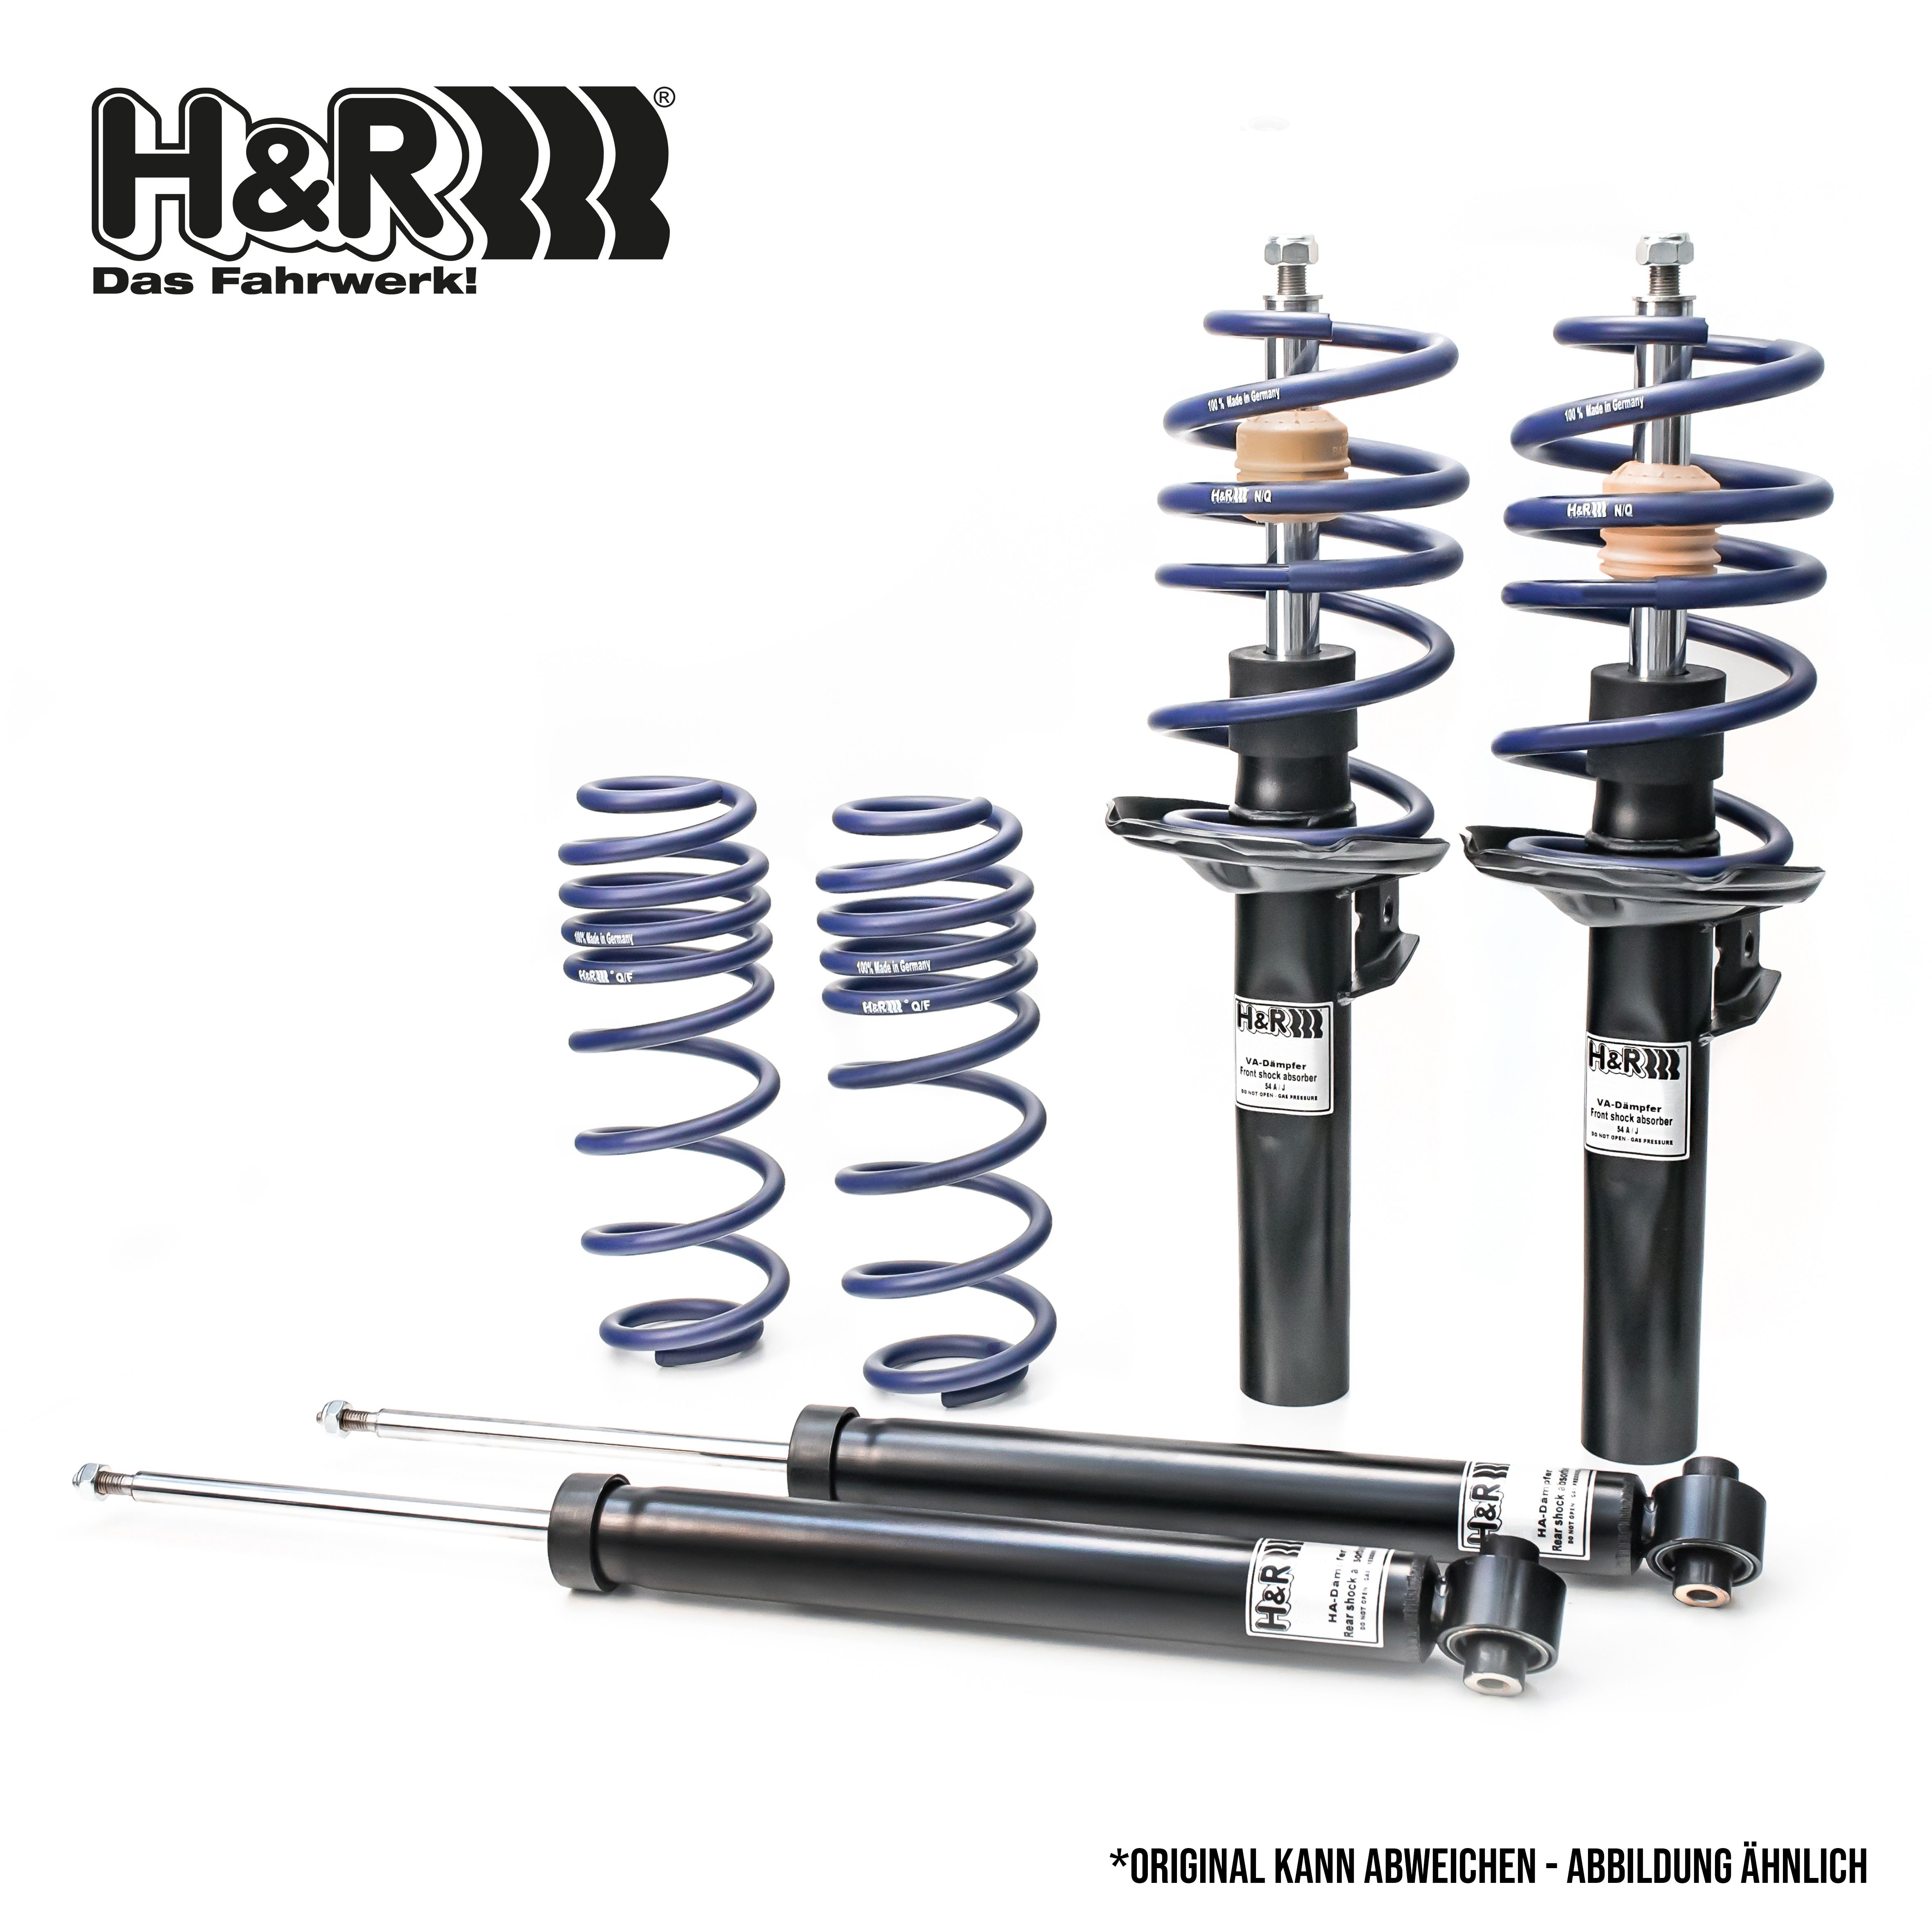 H&R Shock absorber set 40724-2 buy